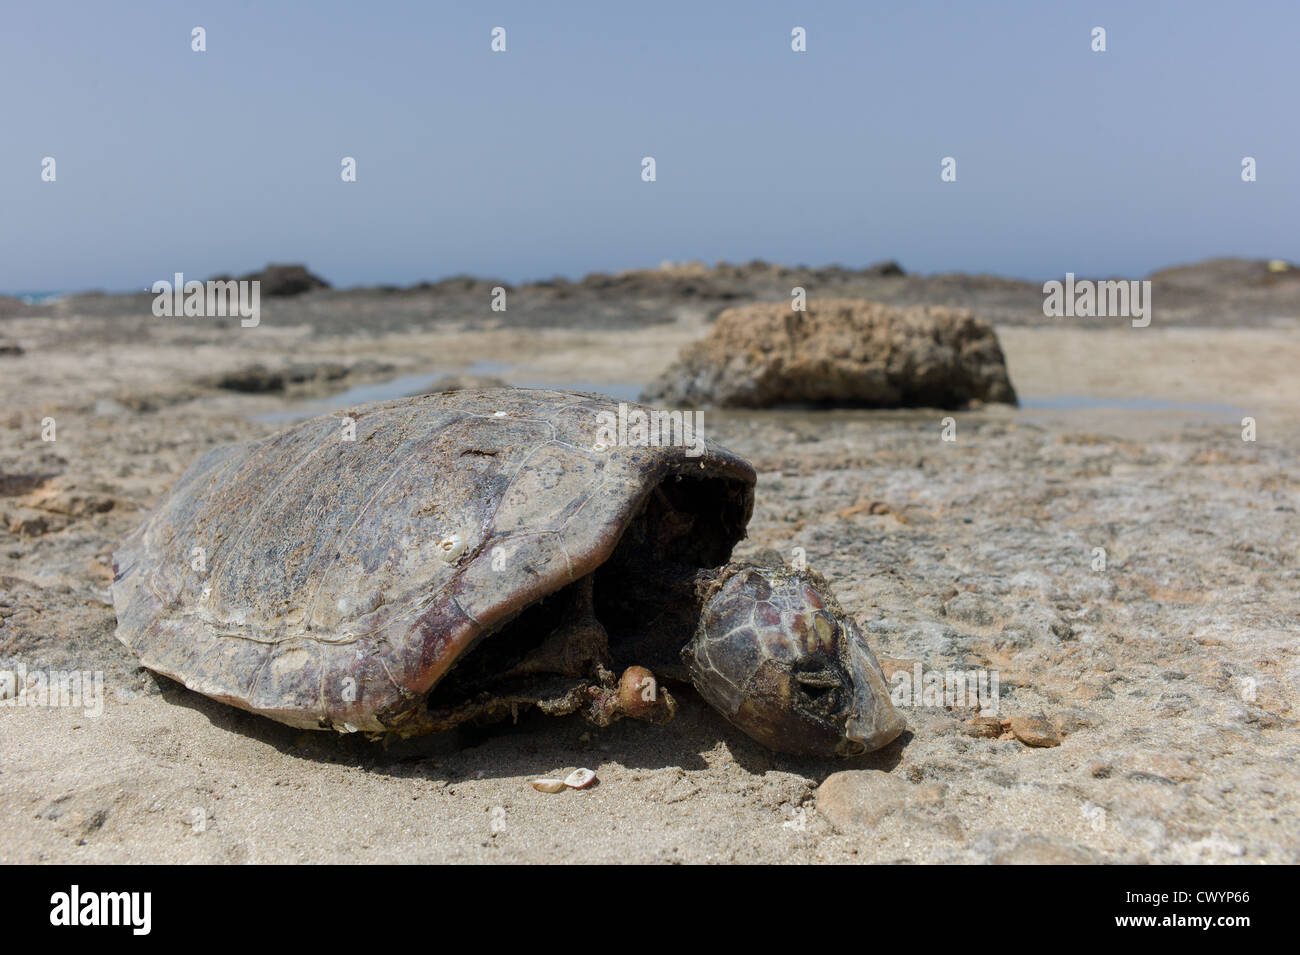 Die-Off Animal masse concept. Une carcasse d'une tortue de mer sur une plage Banque D'Images